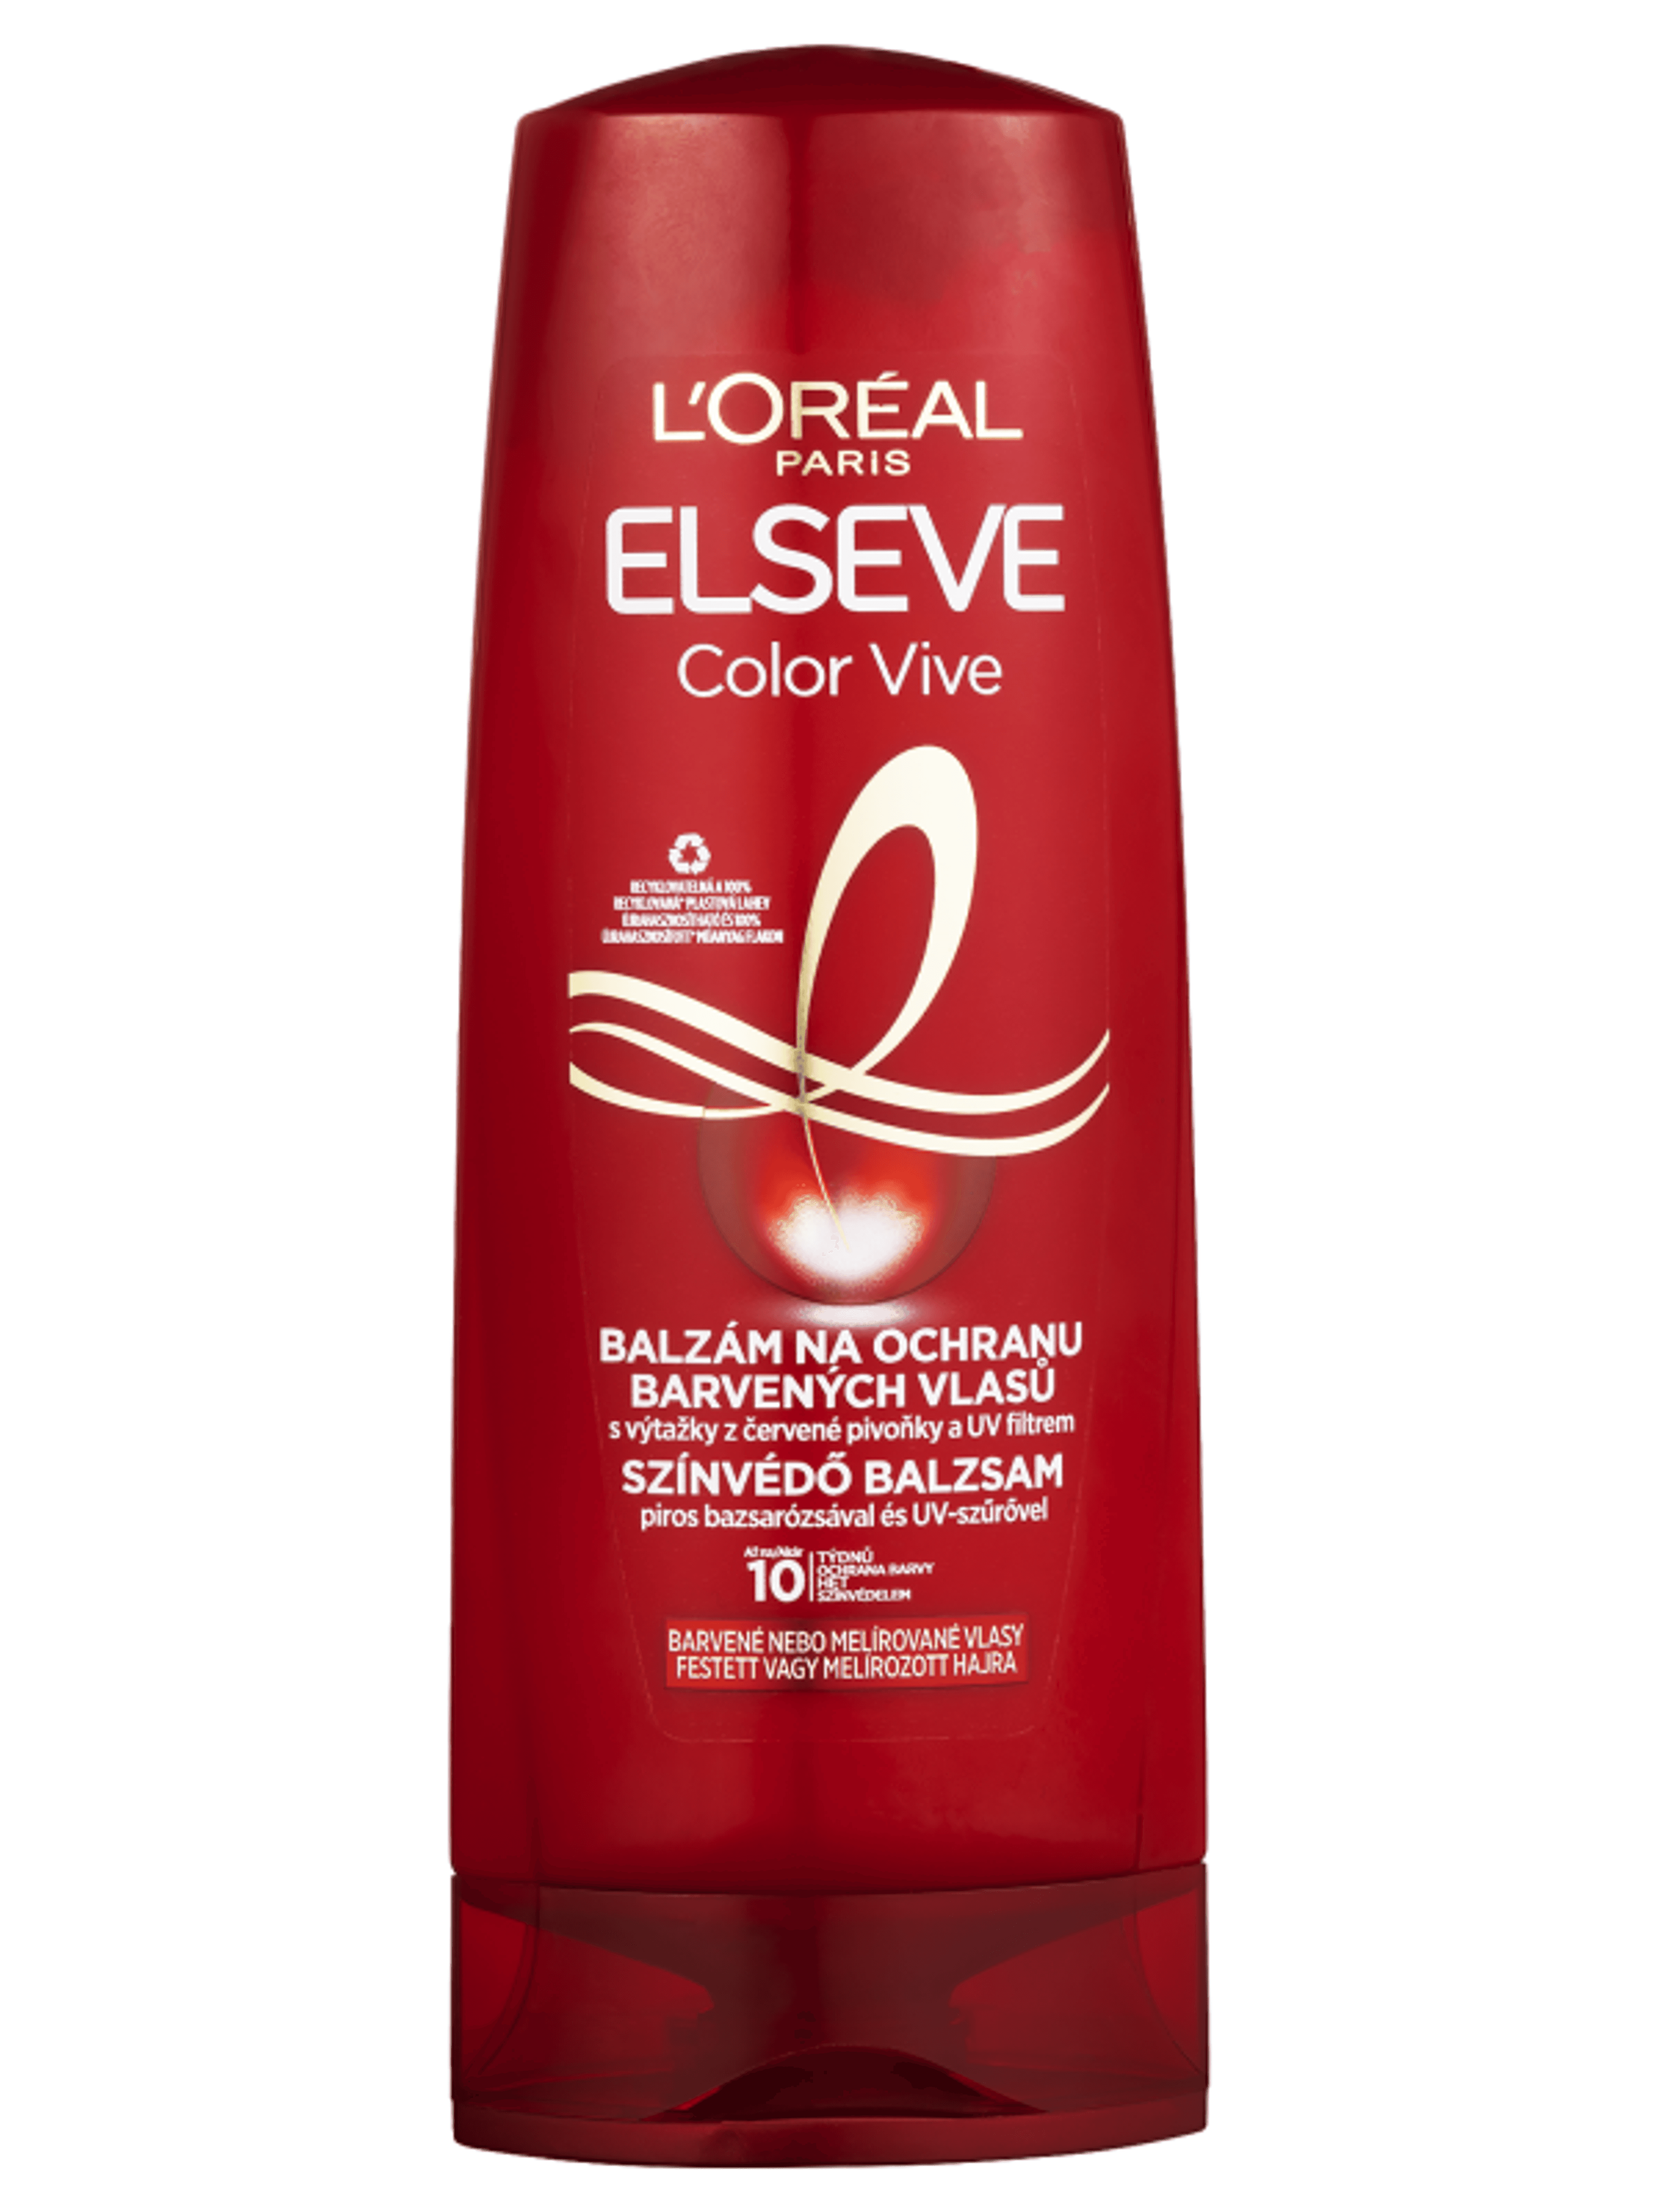 L'Oréal Paris Elseve Color-vive színvédő balzsam - 400 ml-2